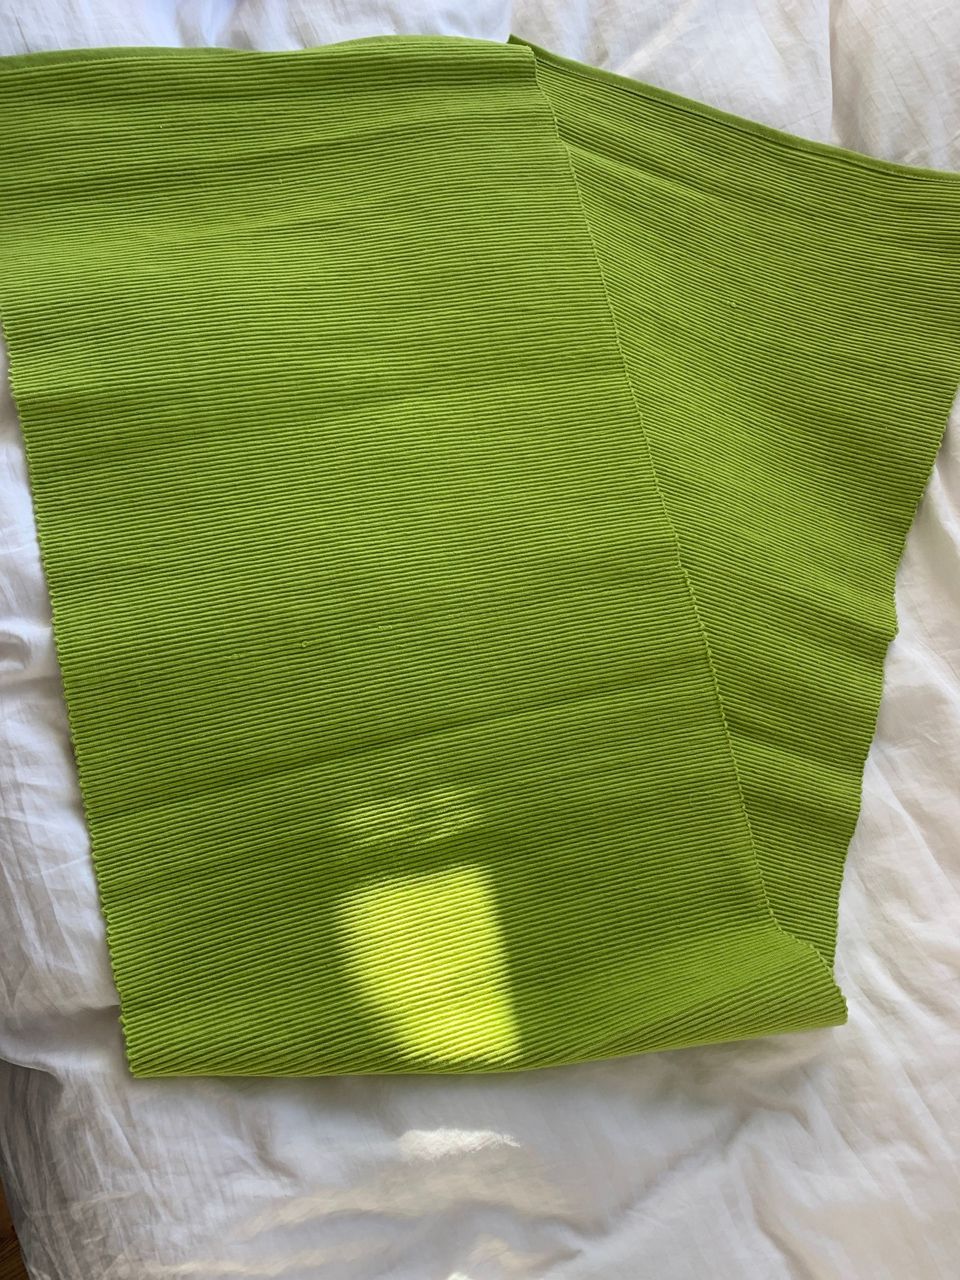 Kesän vihreä siisti pirteän värinen kaitaliina 150cm x 40cm, 7€